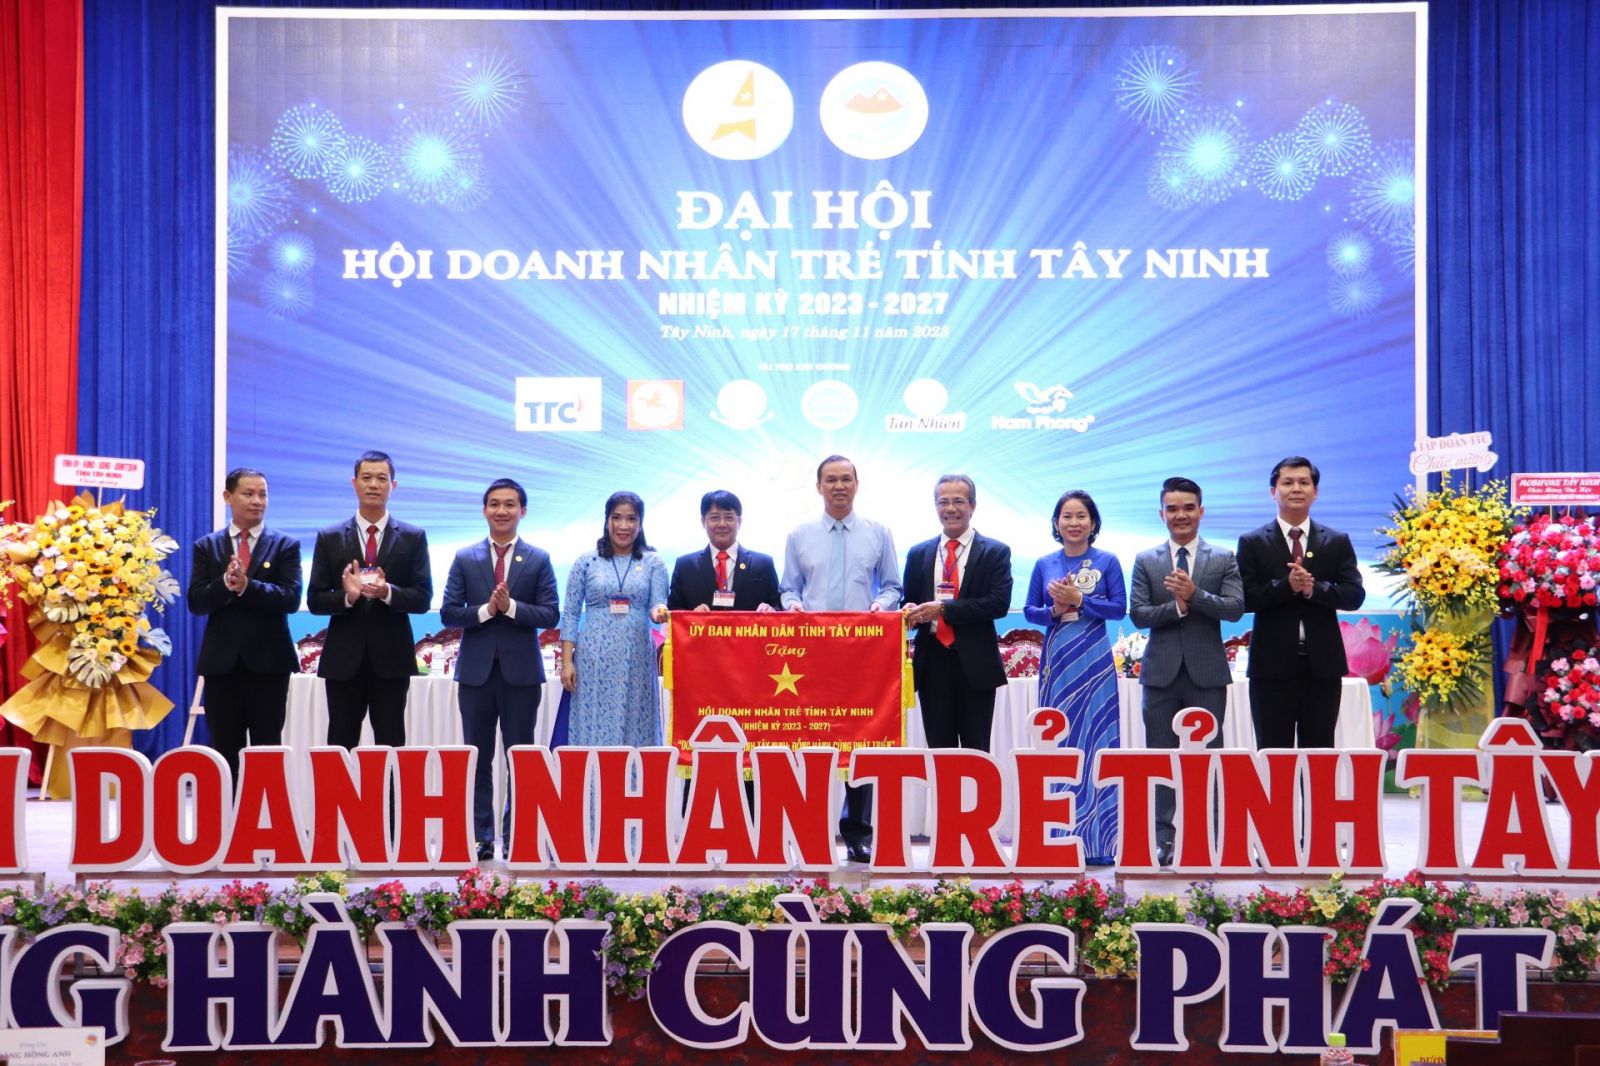 Phó Chủ tịch UBND tỉnh Dương Văn Thắng tặng bức trướng “Doanh nhân trẻ tỉnh Tây Ninh – Đồng hành cùng phát triển” cho Hội Doanh nhân trẻ.